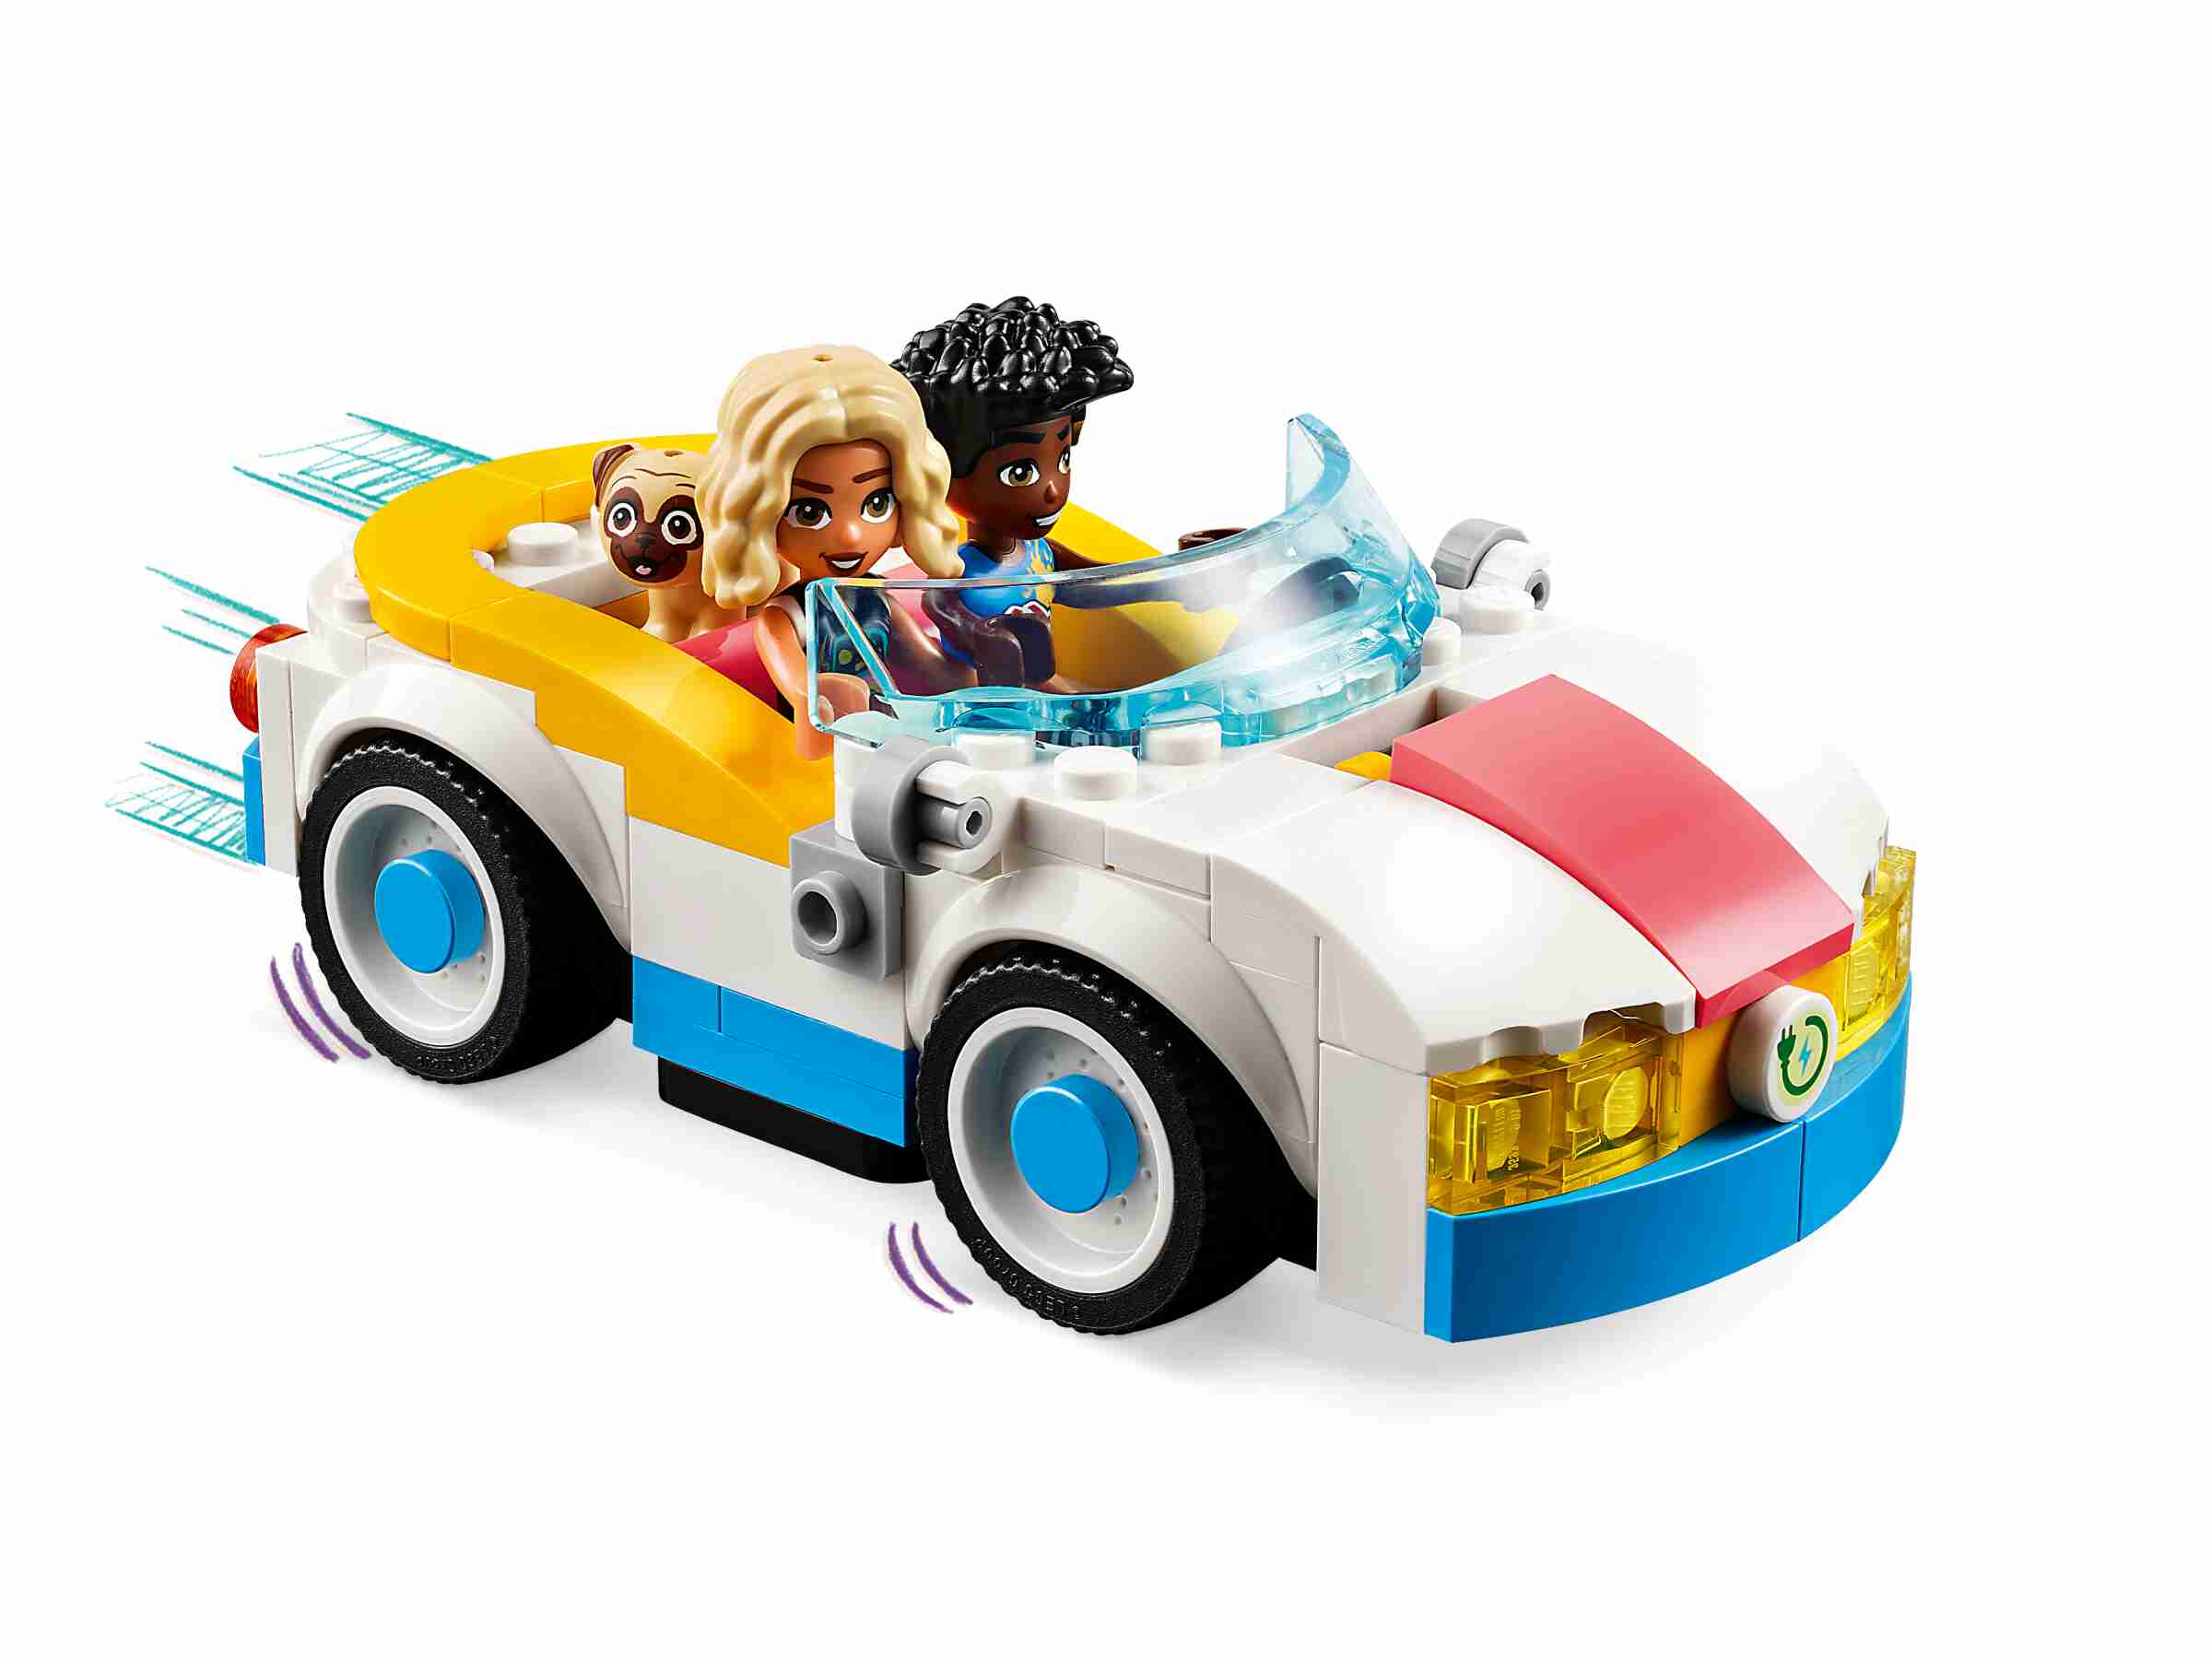 LEGO 42609 Friends E-Auto mit Ladestation, 2 Spielfiguren, Hund Dango, Picknick